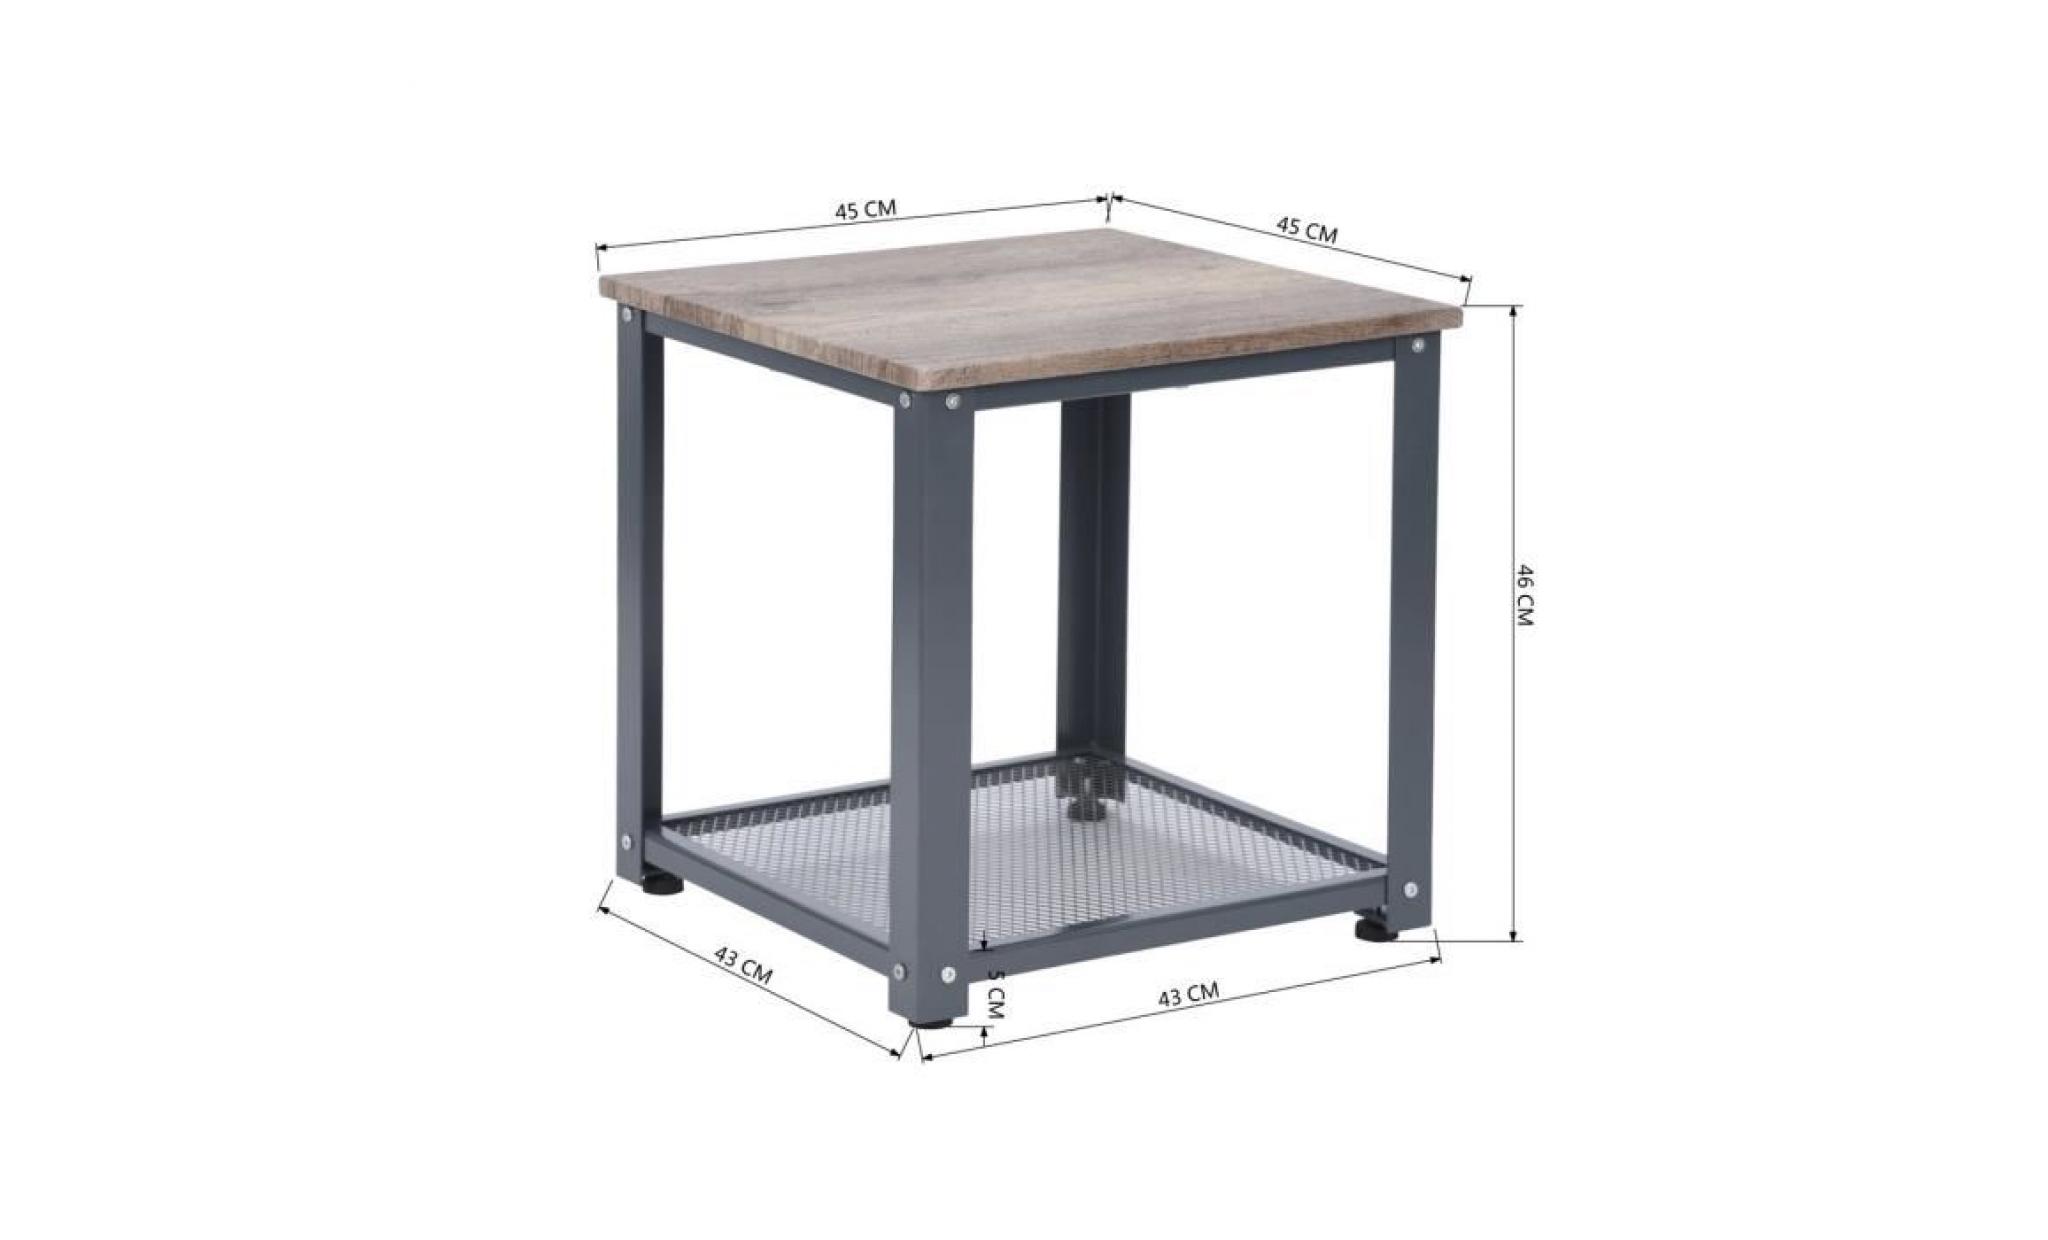 table d'appoint table basse avec rangement armature en métal pour cuisine industriel styletable rétro pas cher